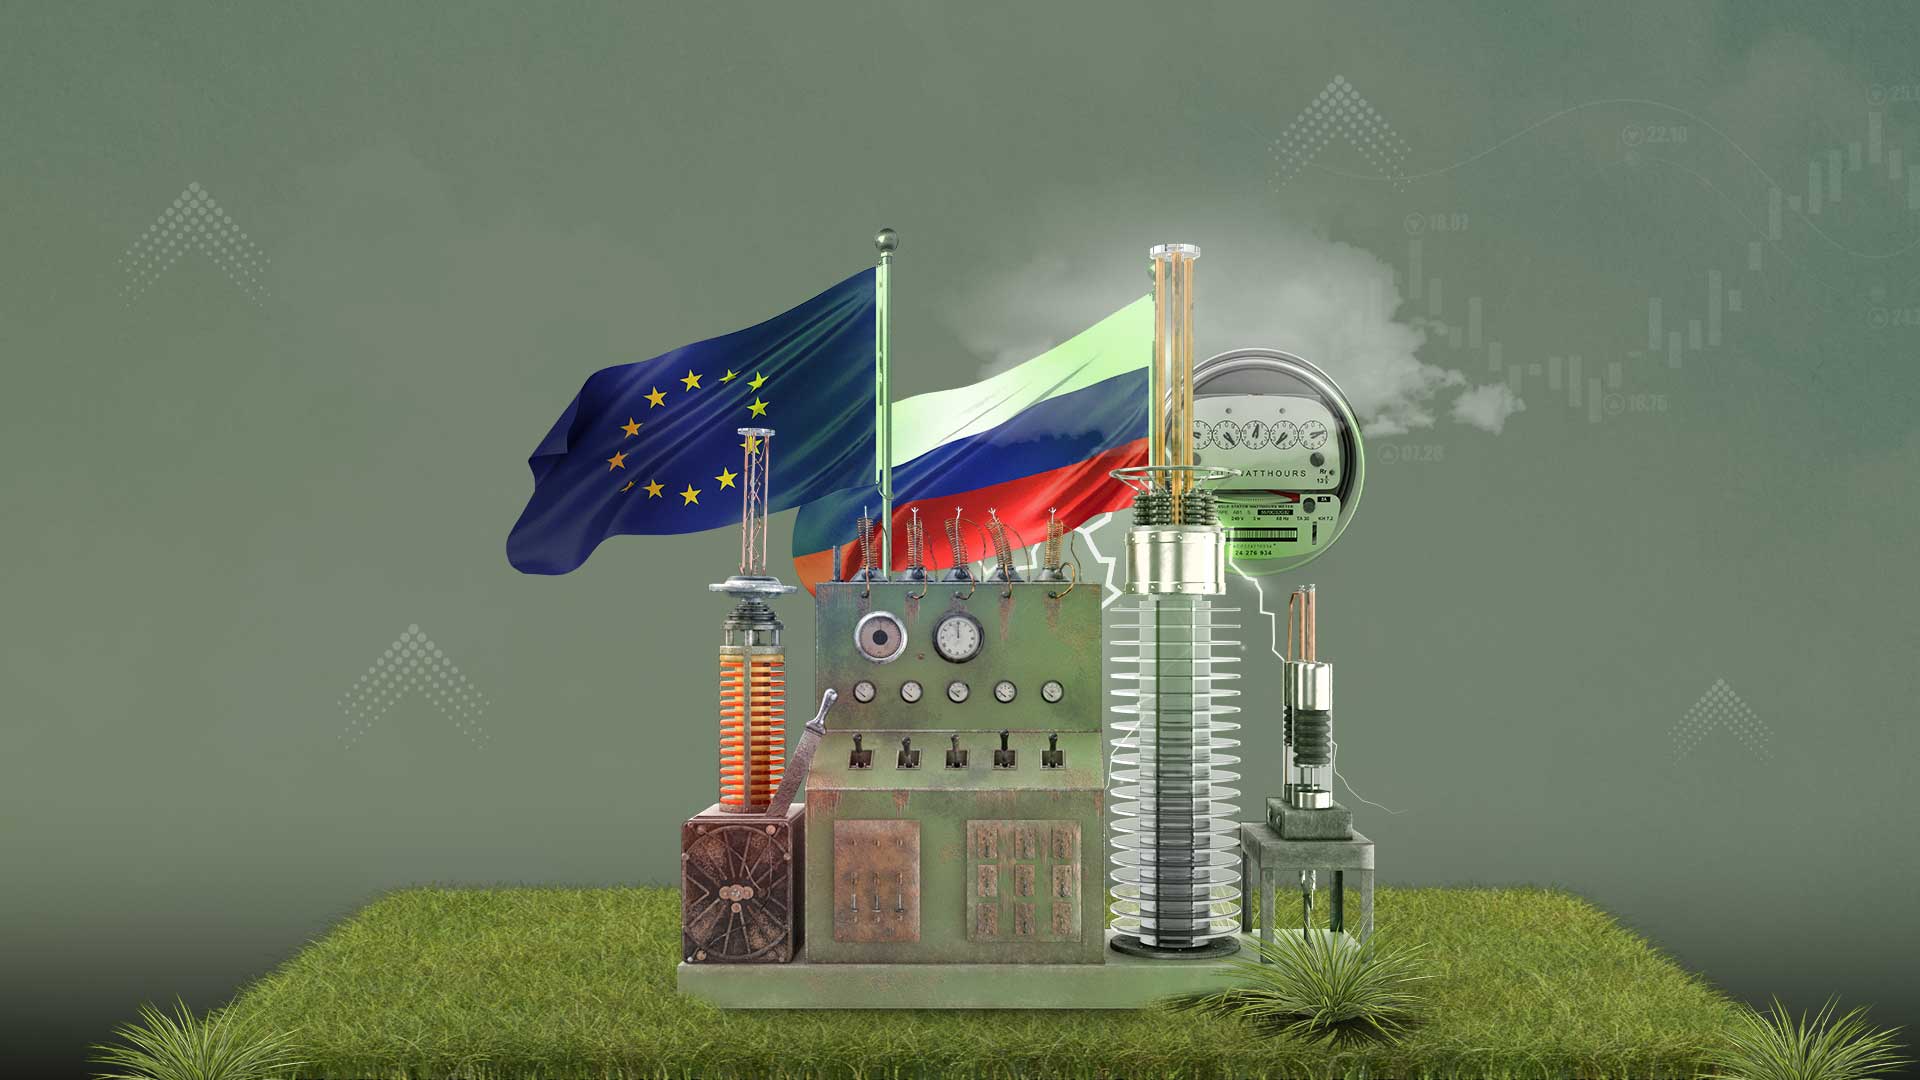 حظر الواردات الروسية وأزمة الطاقة القادمة لأوروبا